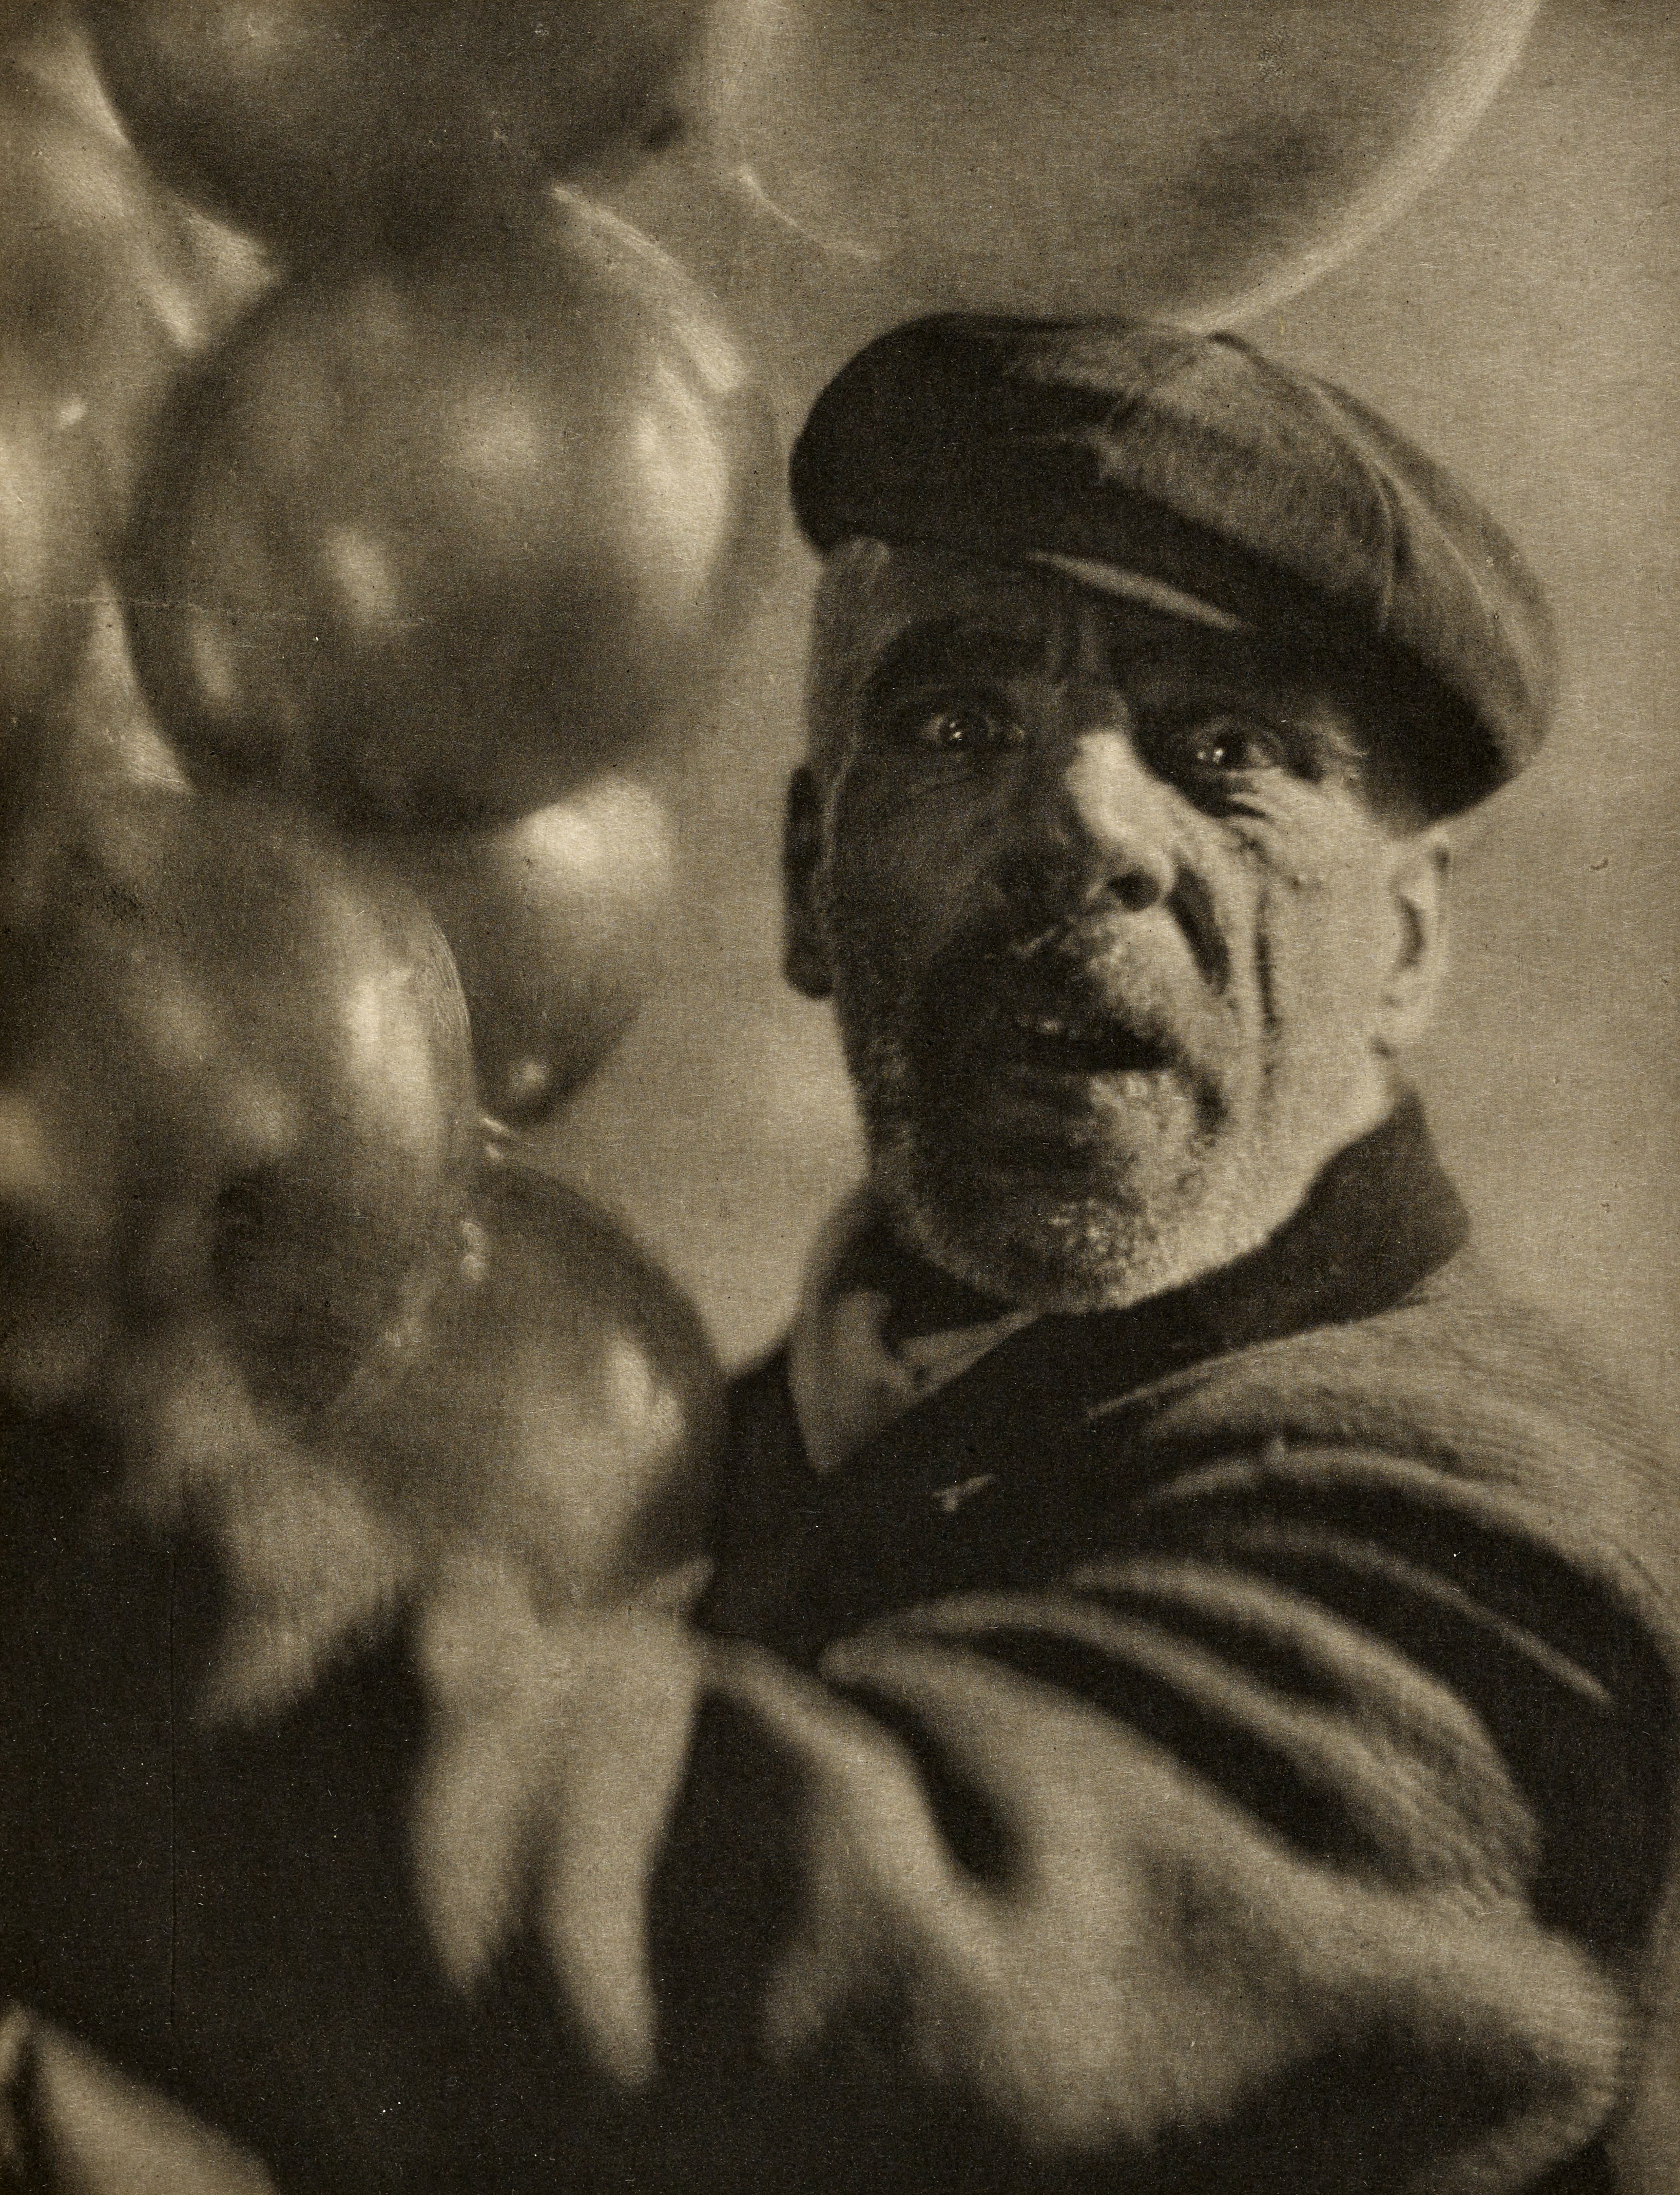 Fotó: Baron A. de Meyer: The Ballon Man, 1912 (megjelent: Camera Work 40.; 1912)